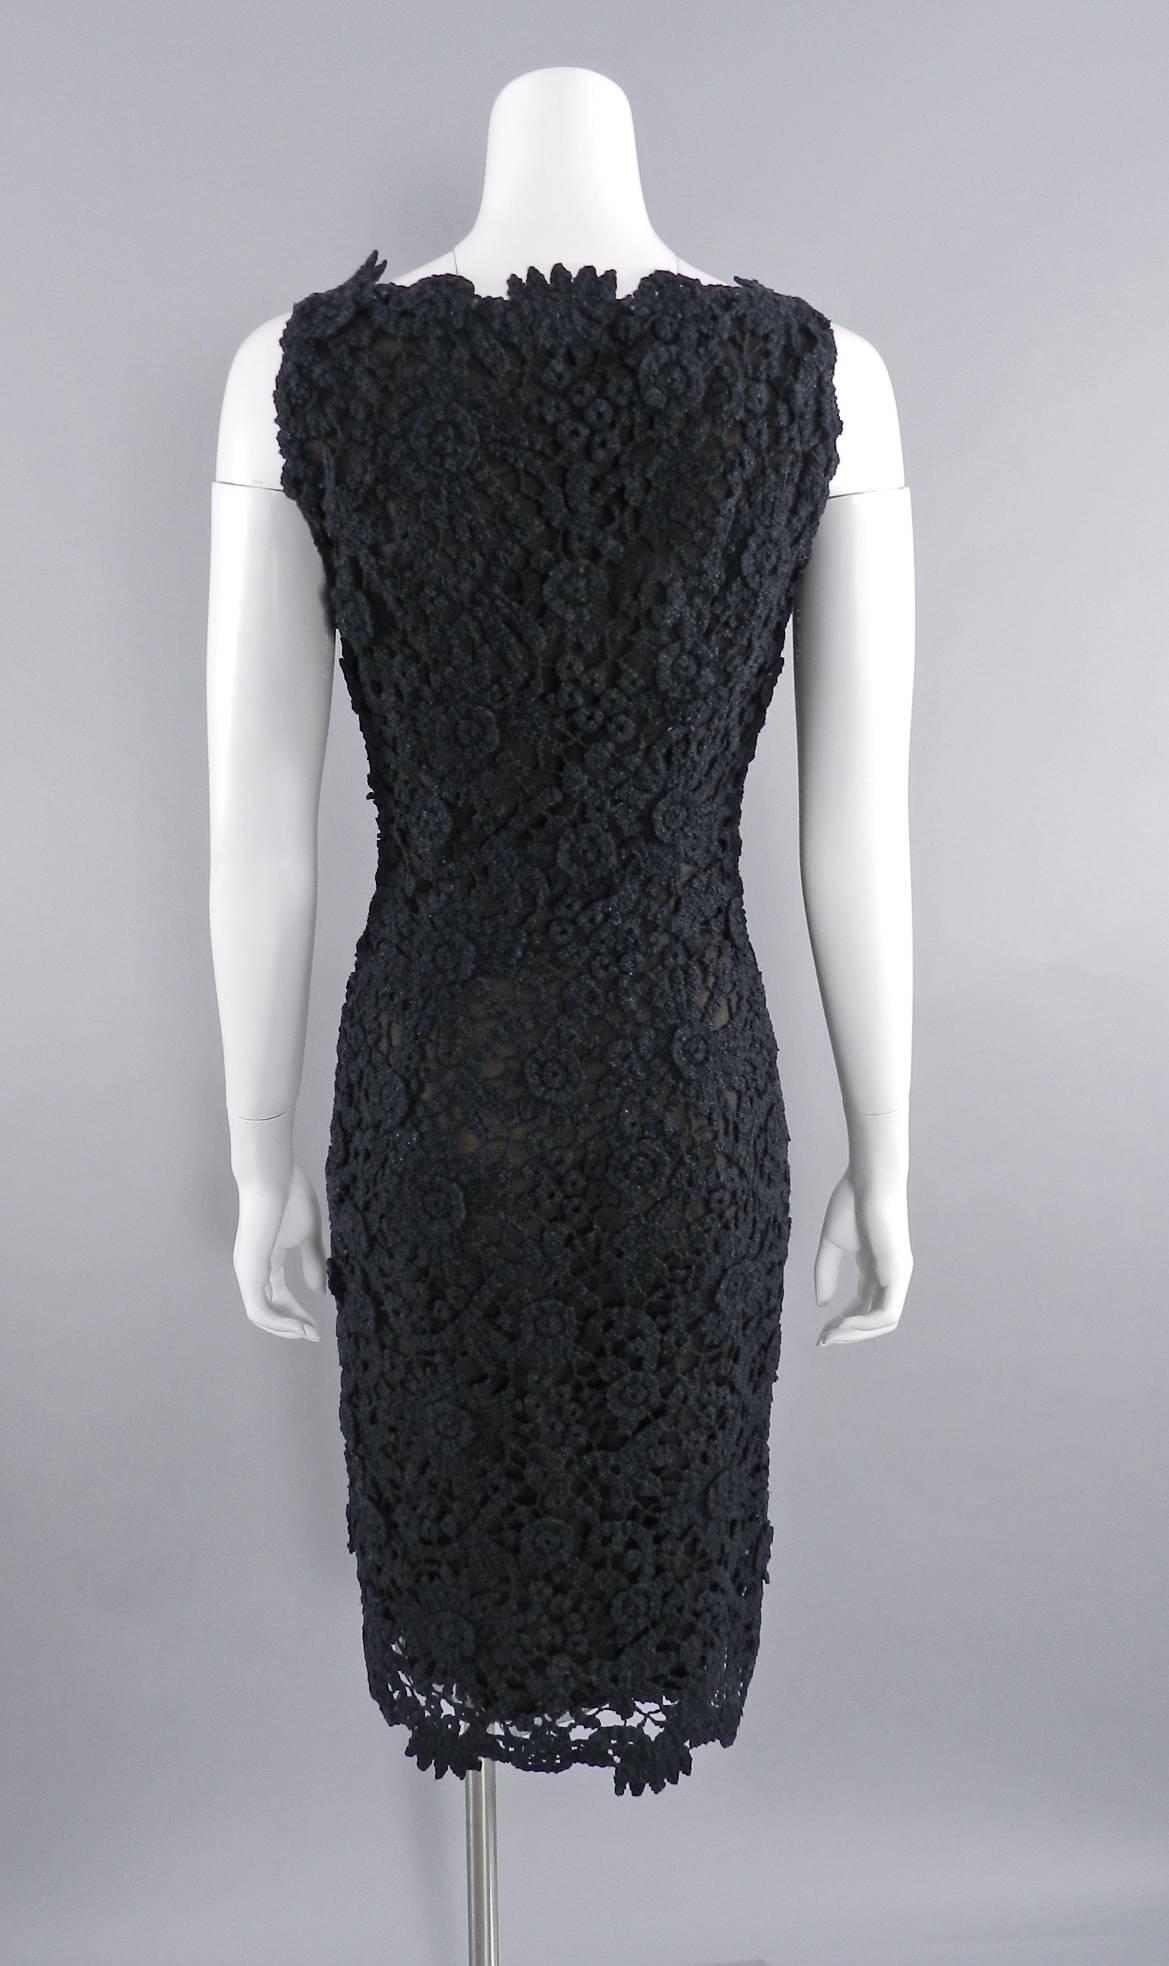 Pierre Balmain Haute Couture by Oscar de La Renta Black Lace Dress 1990's 1